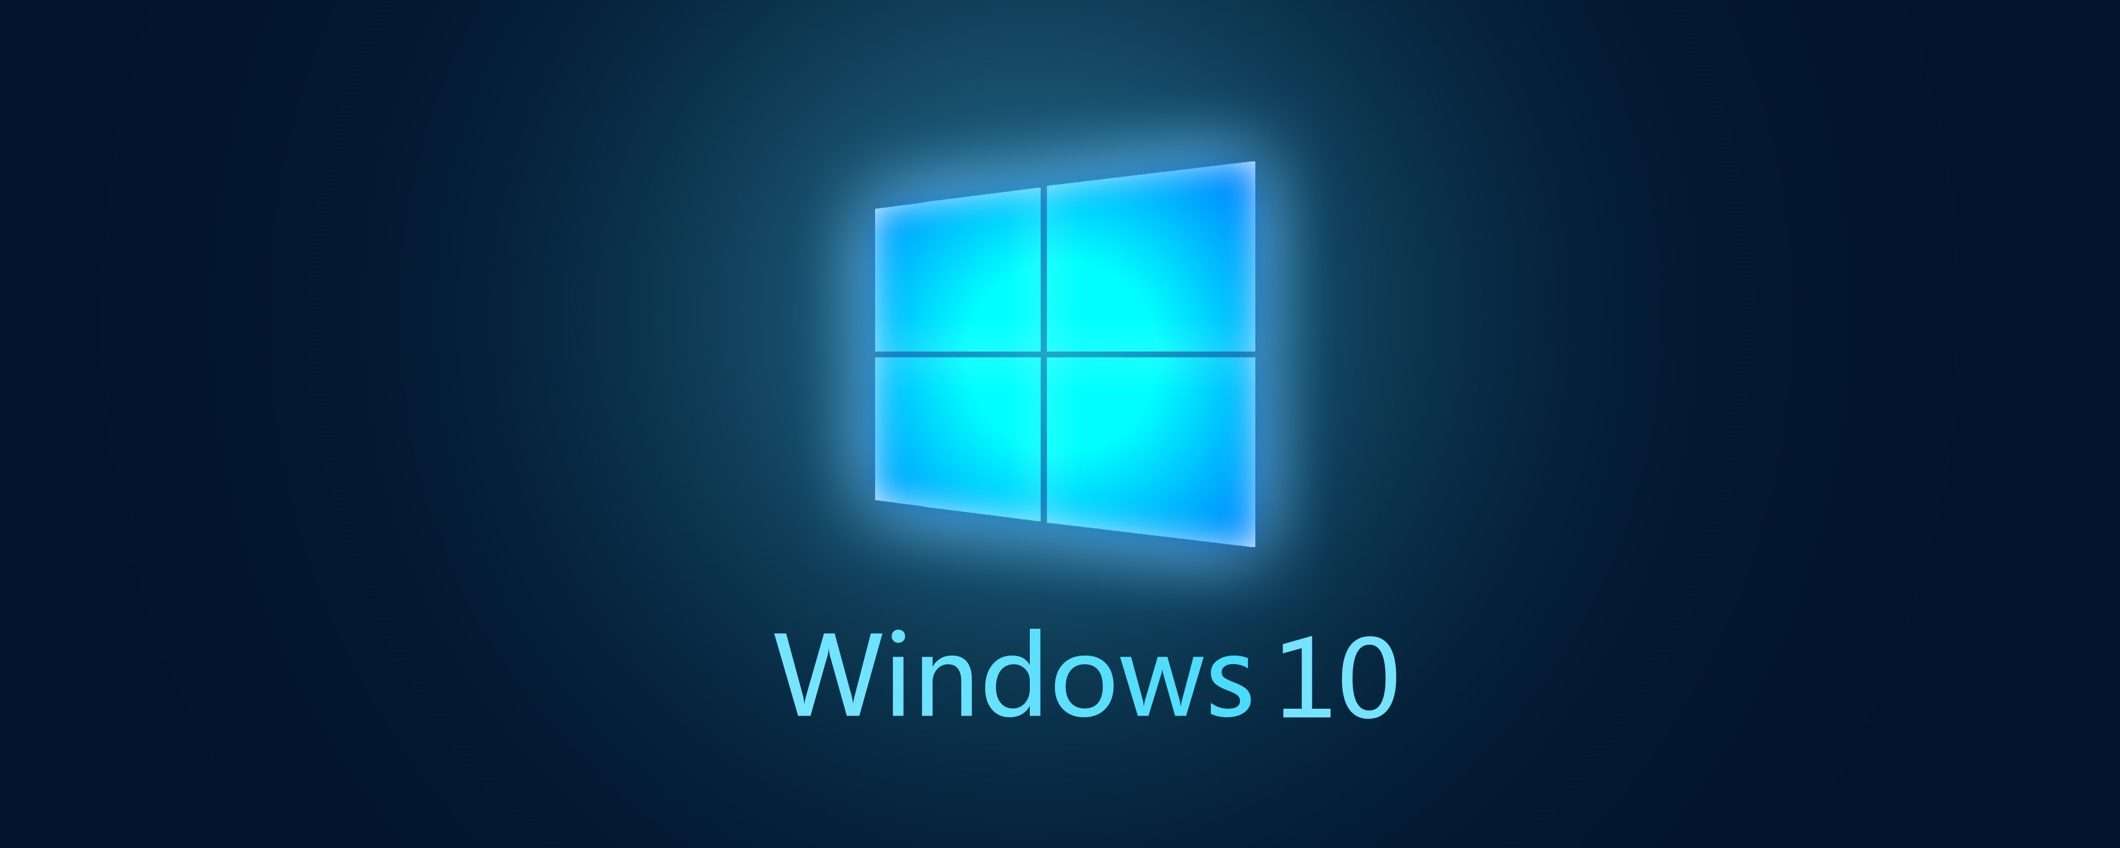 Windows 10: problemi con la barra delle applicazioni